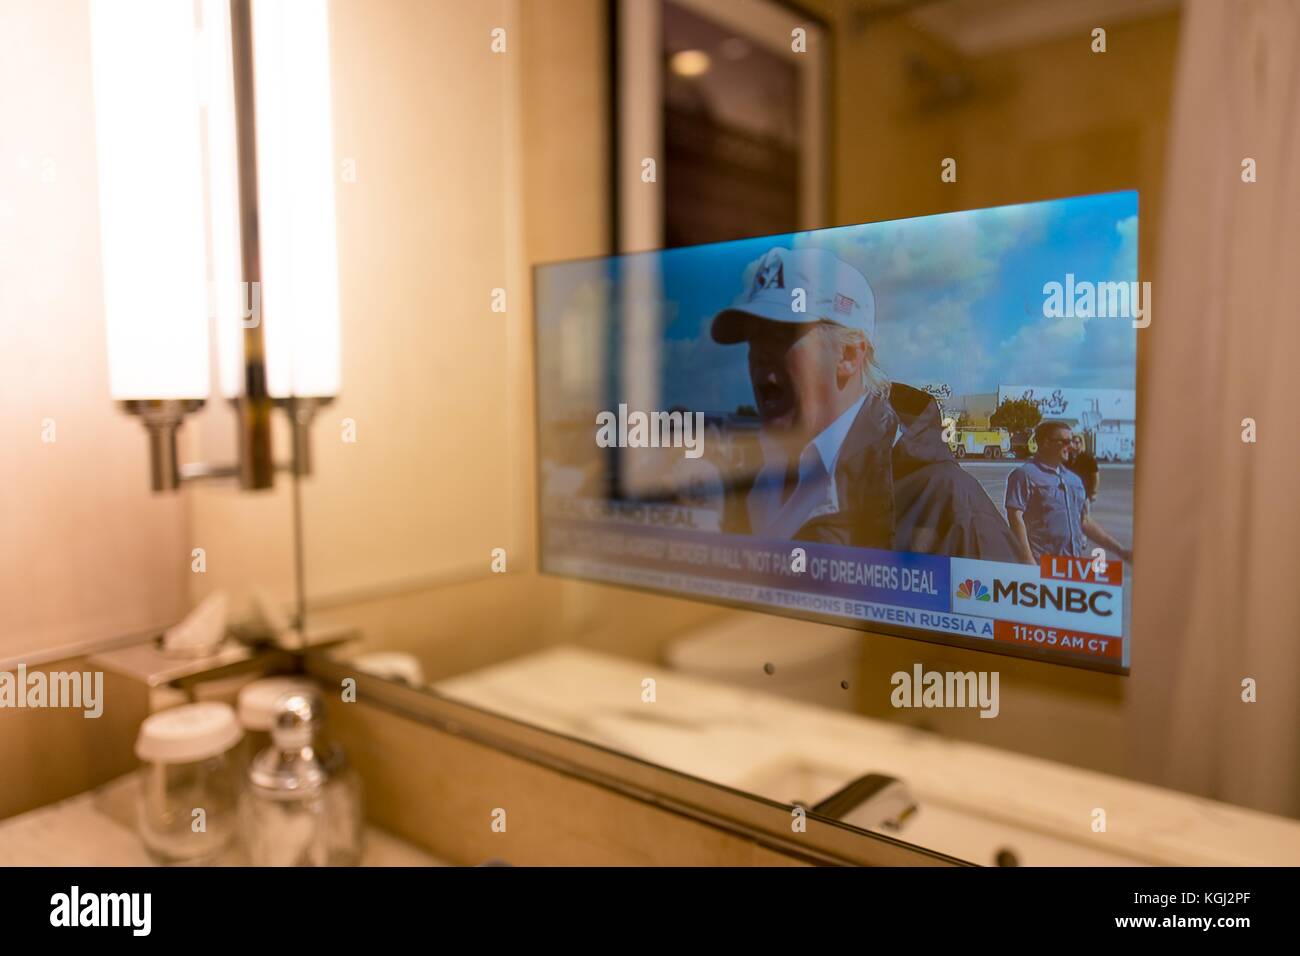 Dans un hôtel d'affaires à Manhattan, New York City, New York, une télévision transparente intégrée dans le miroir de salle de bains fournit des nouvelles mises à jour de clients de l'hôtel, dans ce cas une histoire à propos de nous le président Donald Trump, le 14 septembre 2017. Banque D'Images